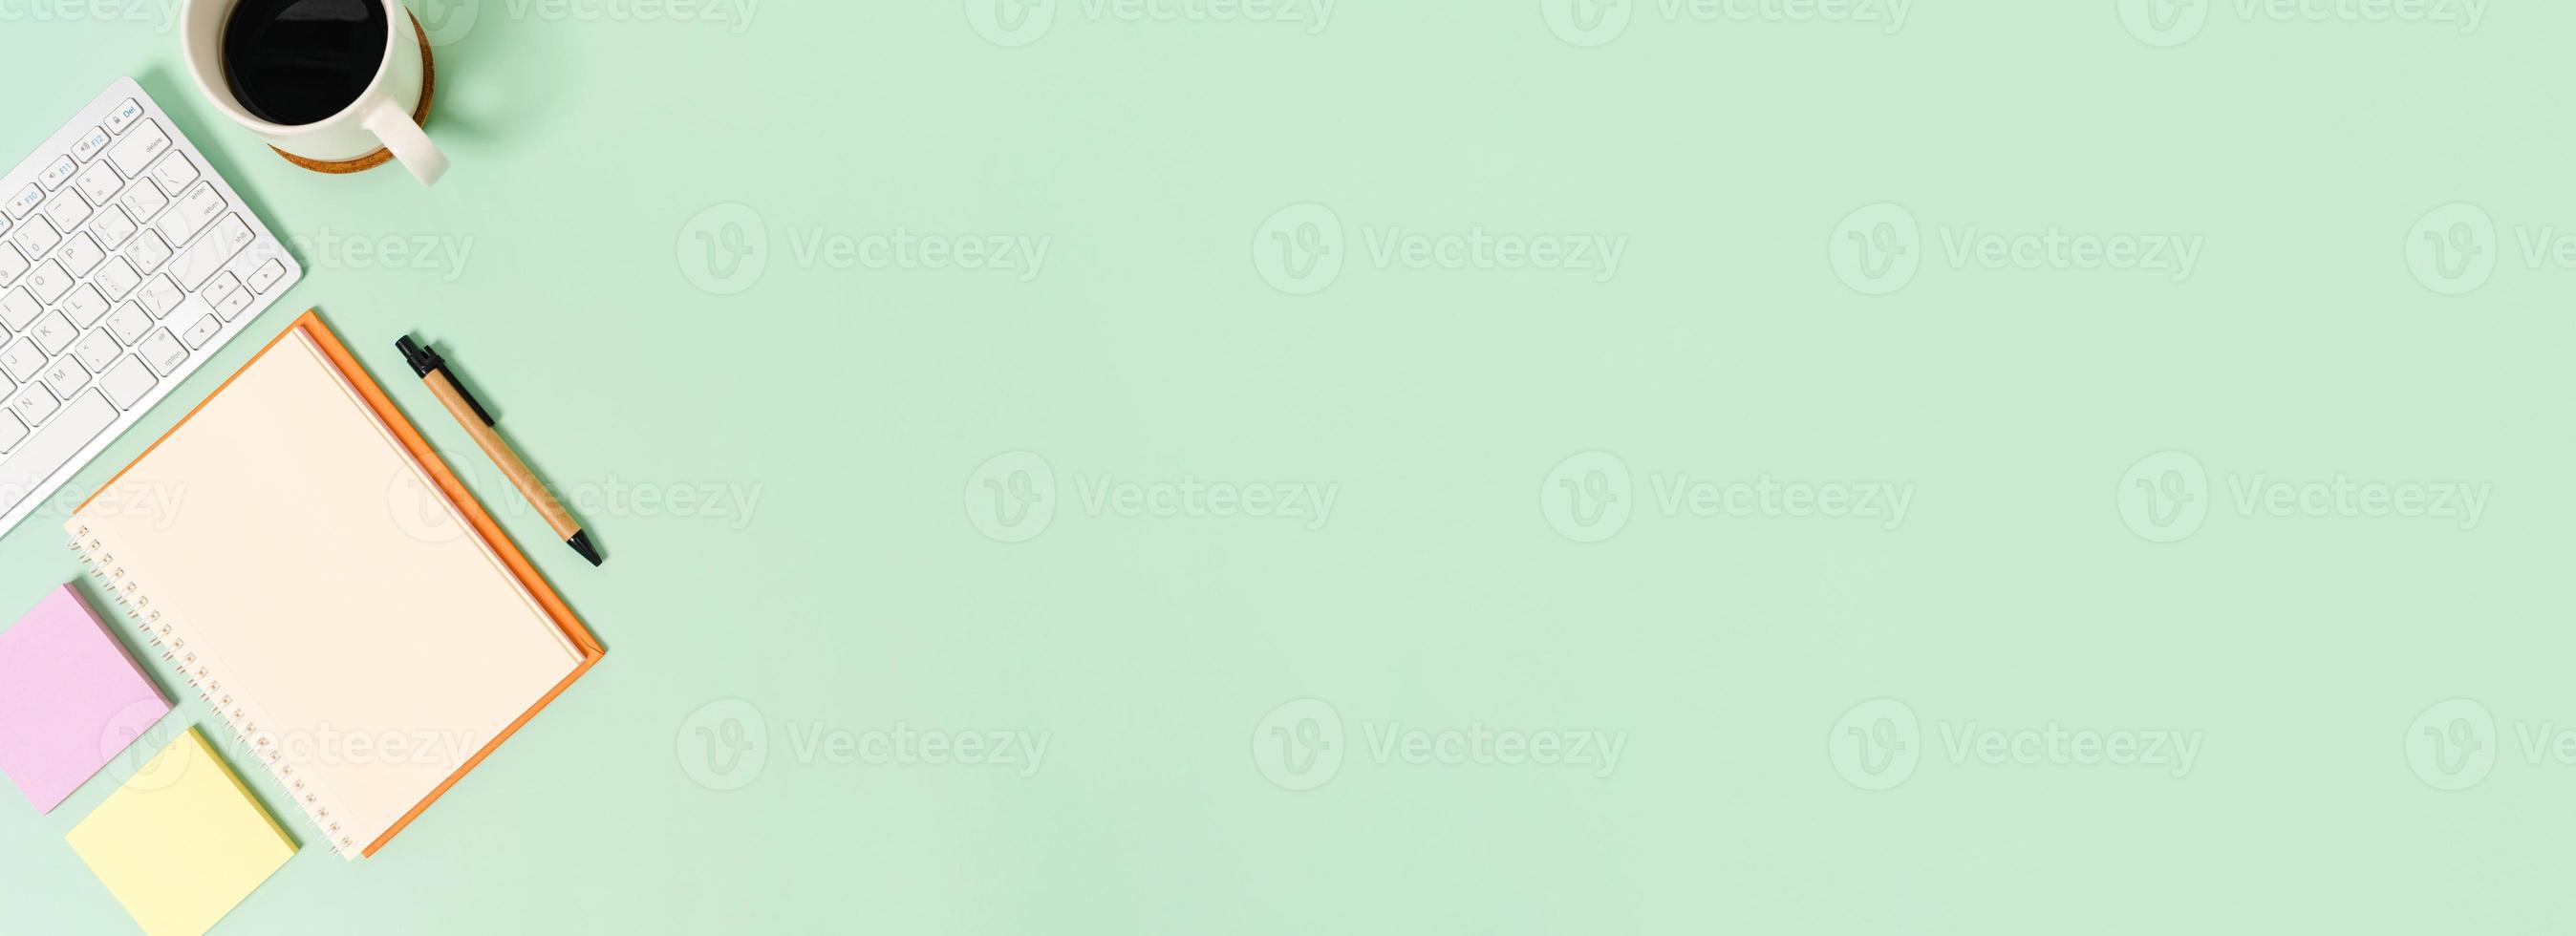 creatieve platliggende foto van een werkruimtebureau. bovenaanzicht bureau met toetsenbord en open mockup zwarte notebook op pastel groene kleur achtergrond. bovenaanzicht mock-up met kopieerruimtefotografie.